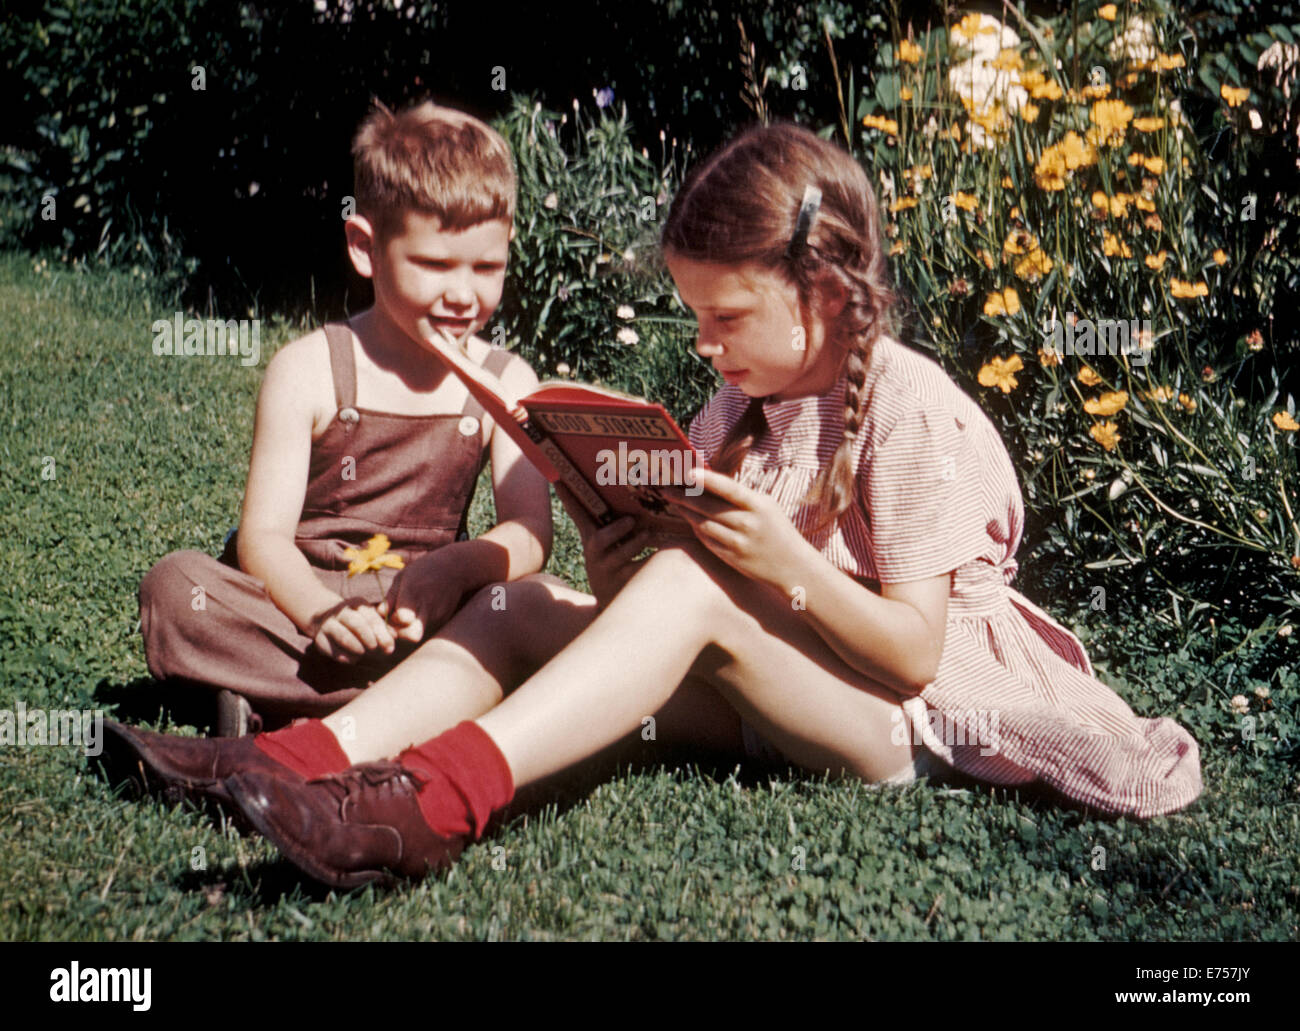 En 1945, un jeune frère et soeur ont été photographiés au début de film couleur Kodachrome en lisant un livre sur une journée d'été dans l'arrière-cour de leur maison. Comme l'un des tout premiers films de transparence (Diapositive), 35mm Kodachrome Kodak avait un film très lente vitesse de seulement ASA/ISO 10. A été introduit en 1935 Kodachrome et est passé par une variété de film plus rapide des vitesses (jusqu'à 200 ASA/ISO) et d'autres améliorations techniques jusqu'à la Eastman Kodak Company fabrication le film populaire en 2009. 1945 Historique photo. Banque D'Images